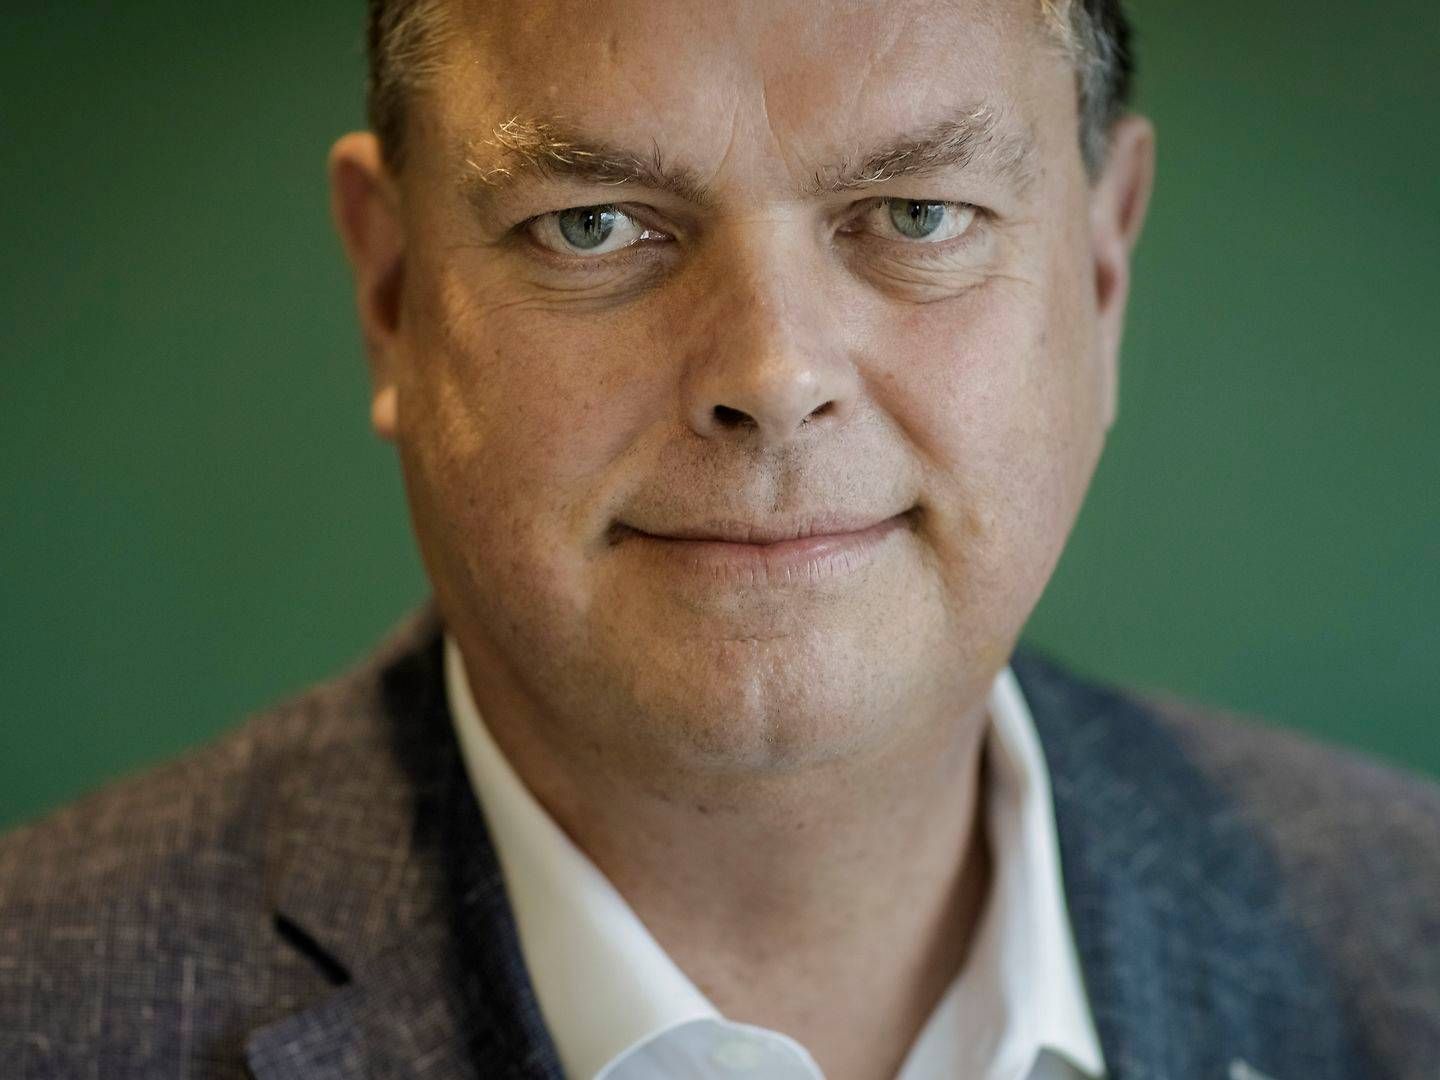 Ligestillingsminister Mogens Jensen (S). | Foto: Mads Nissen/Ritzau Scanpix